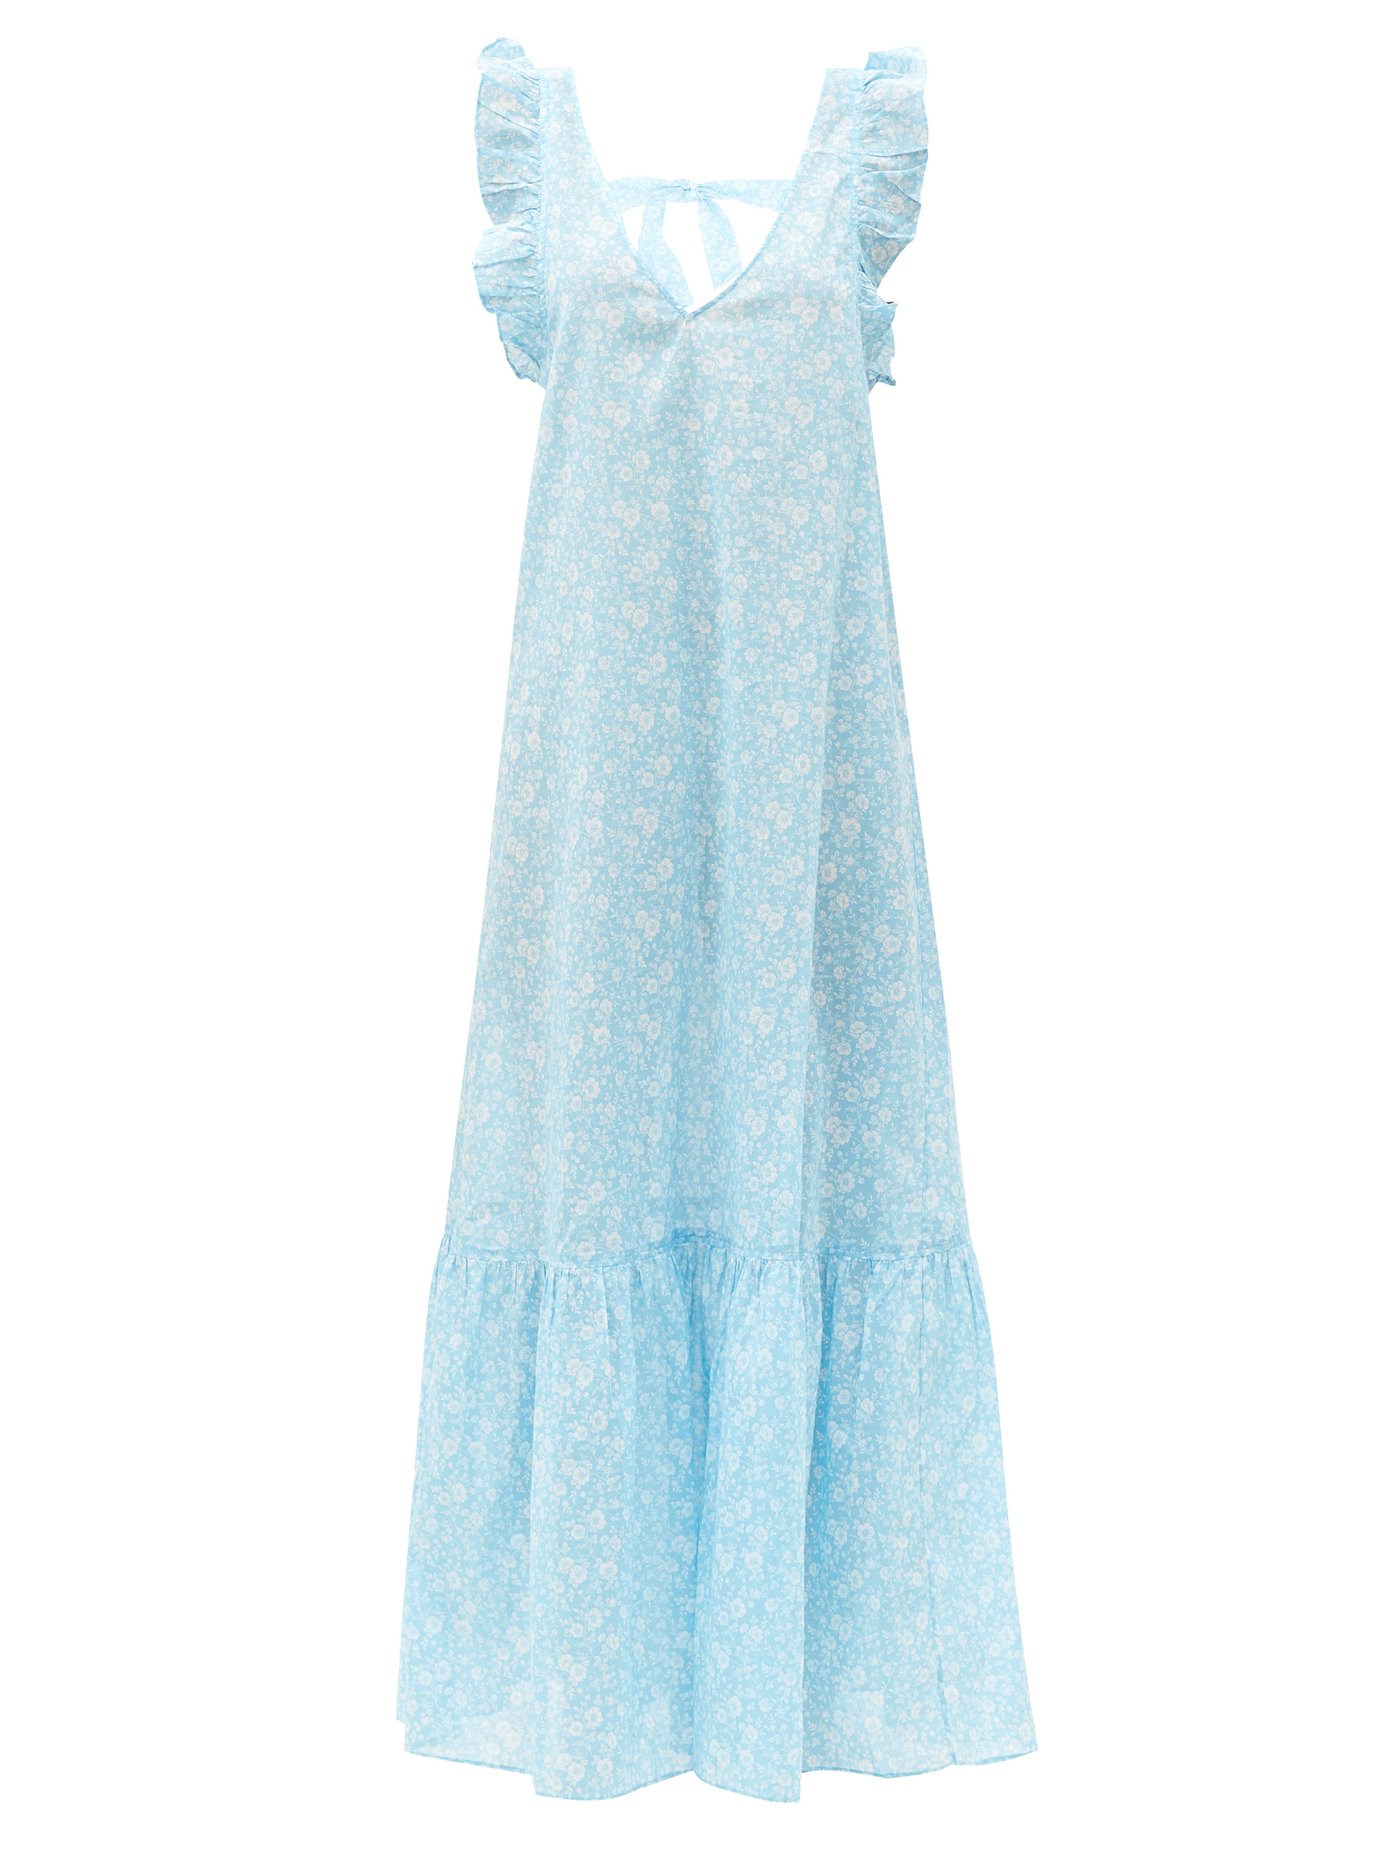 ganni blue floral dress